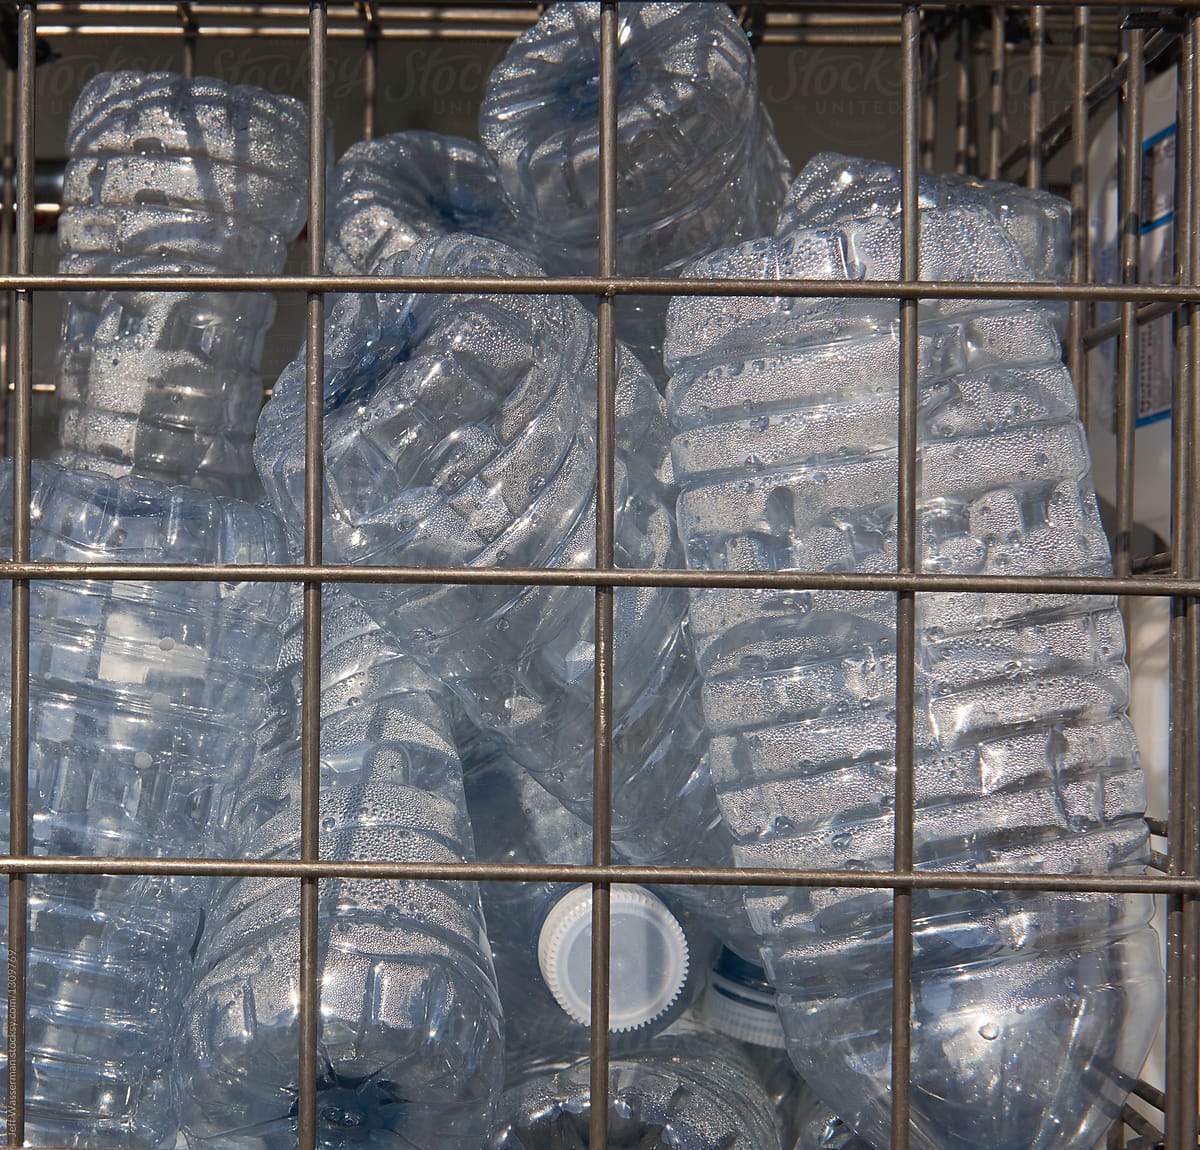 Plastic Water Bottles Ready for Recycling in Bin